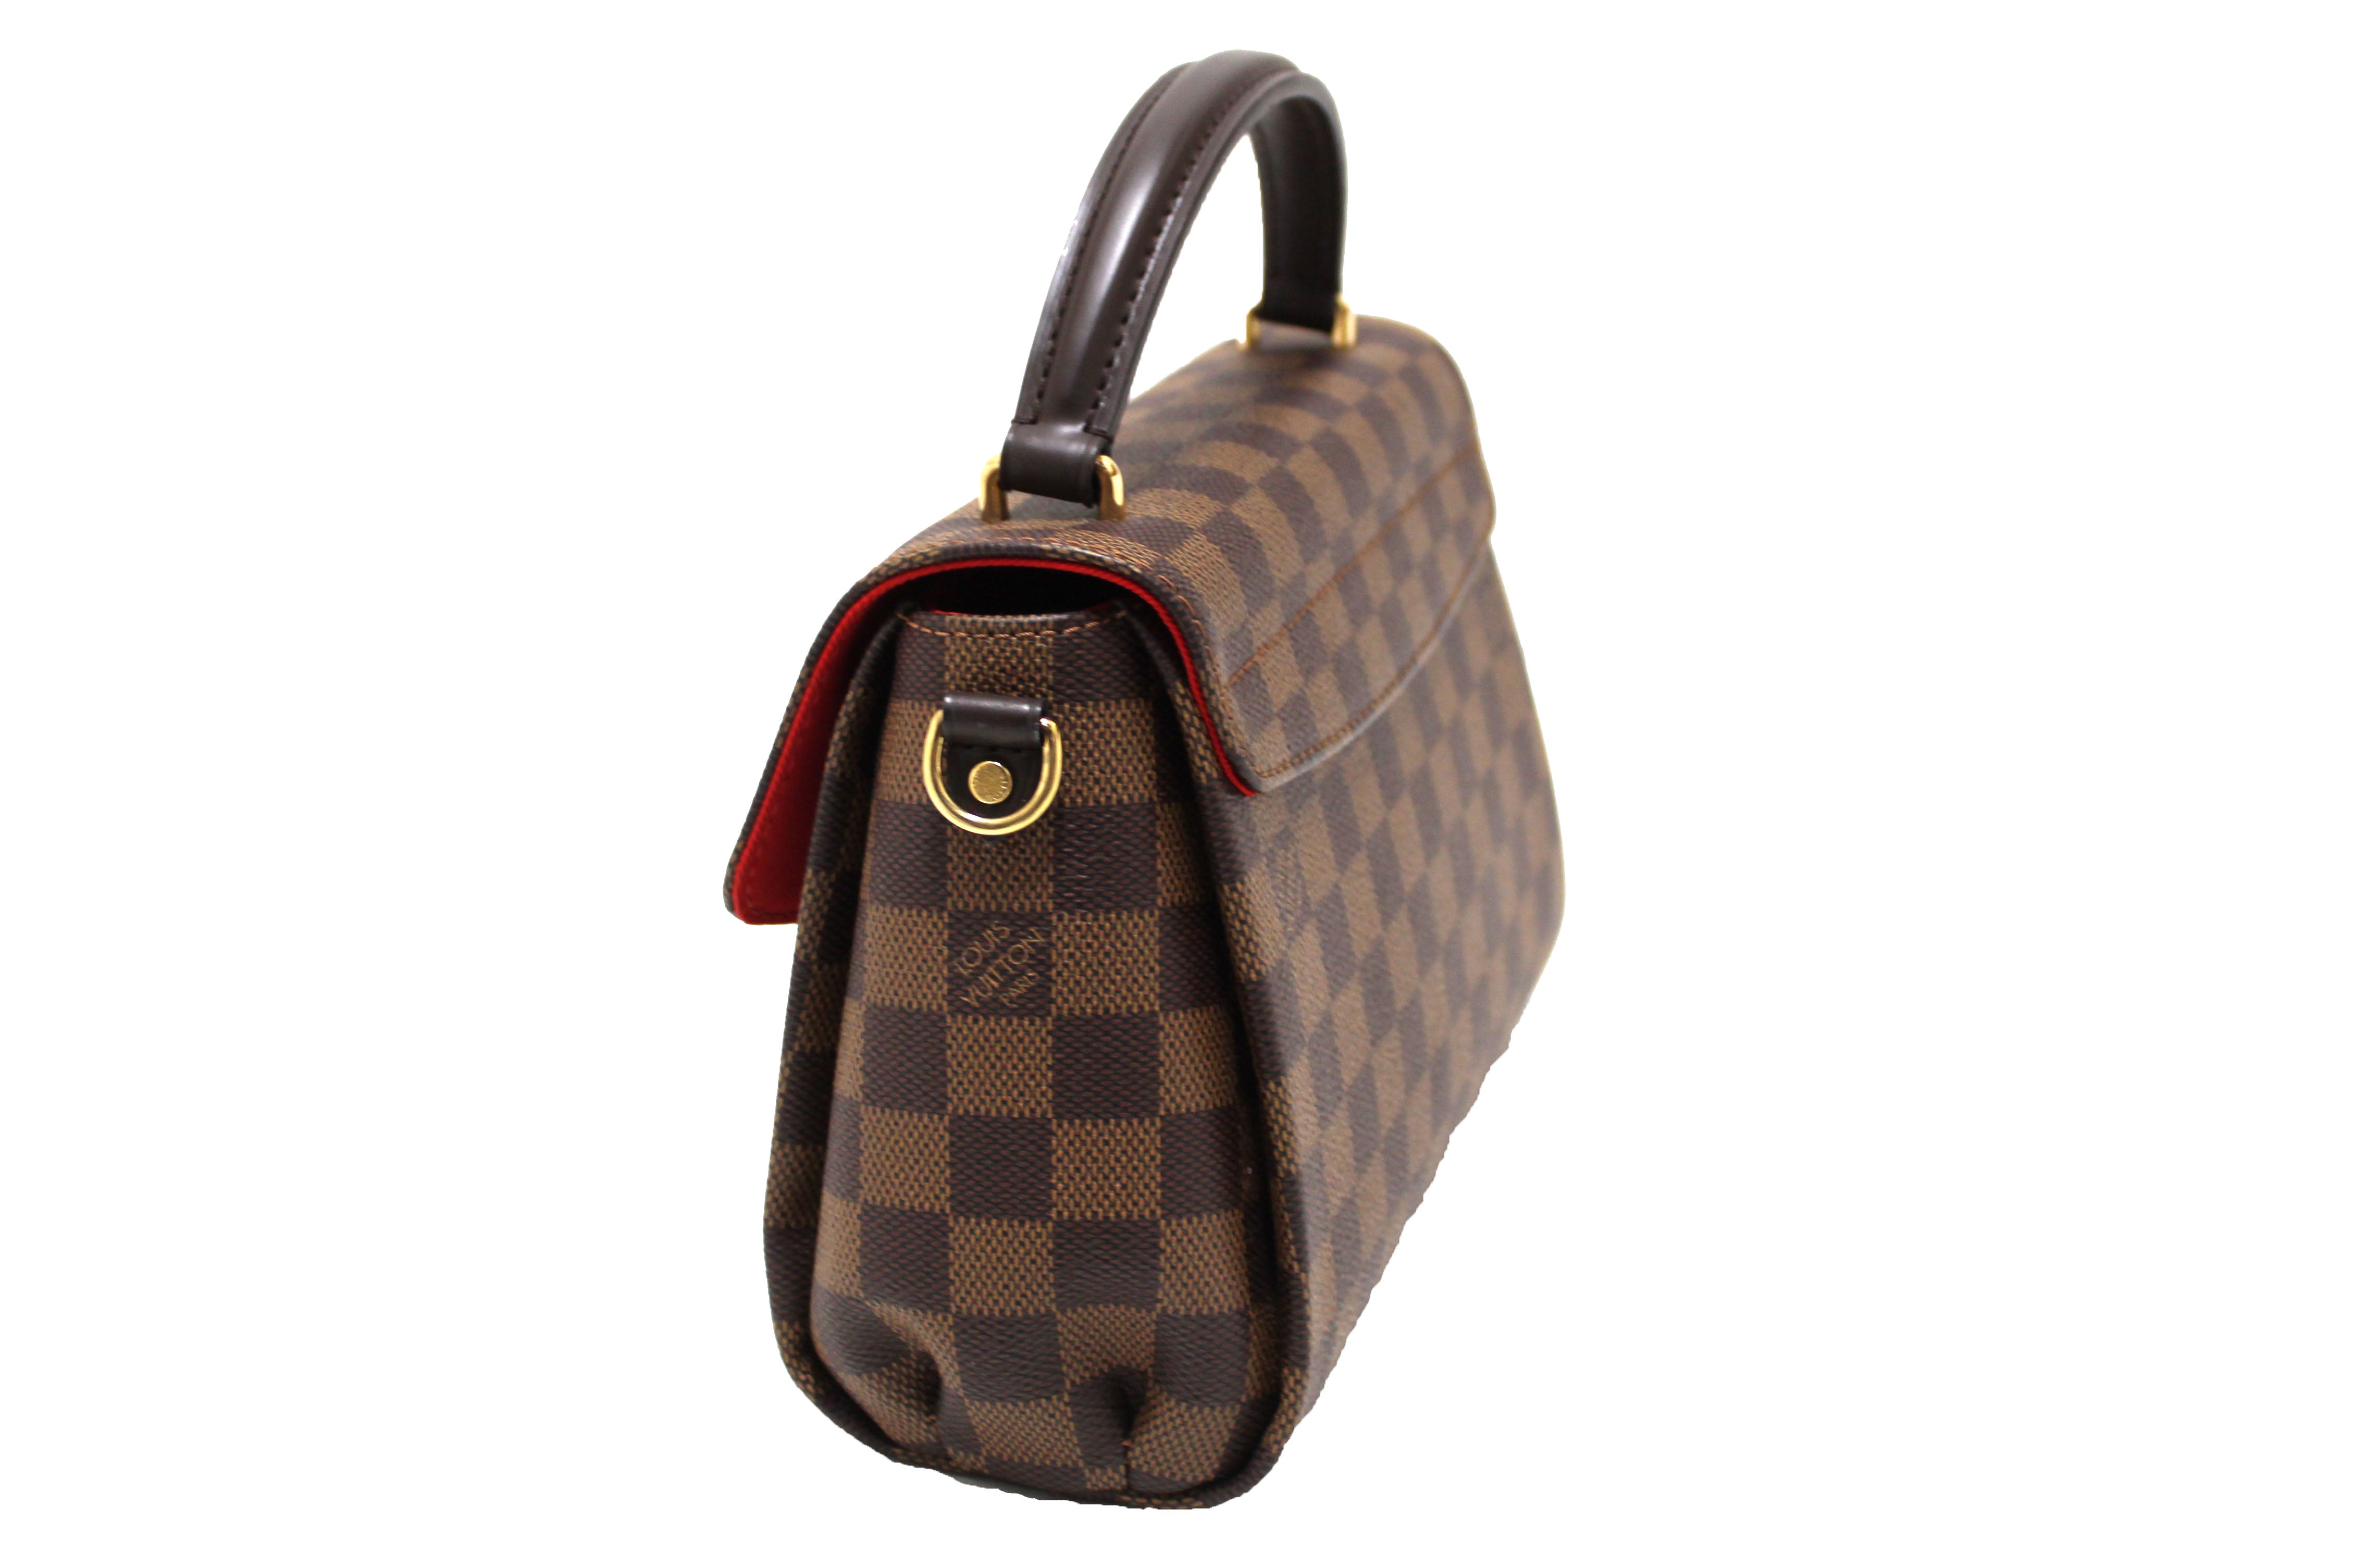 Authentic Louis Vuitton Damier Ebene Croisette Handbag/Messenger